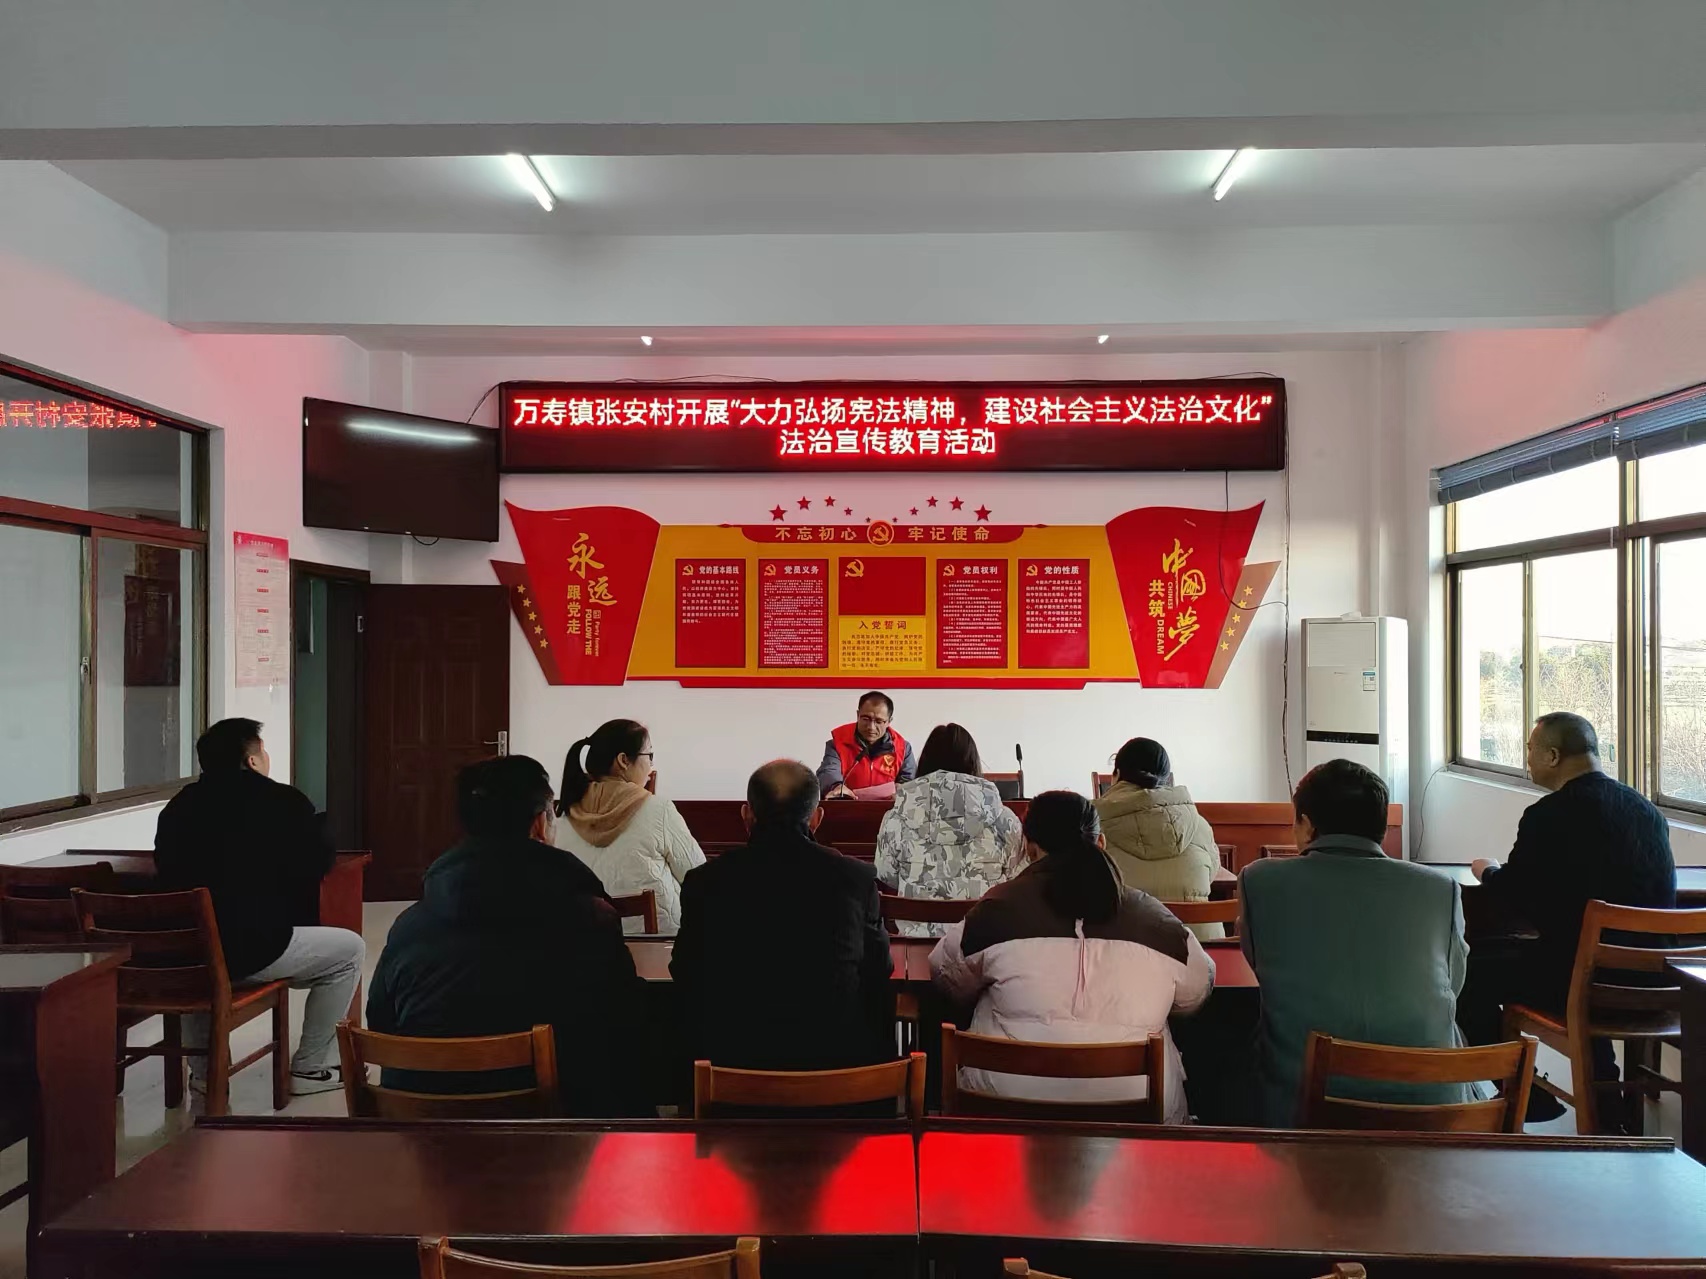 万寿镇张安村开展“大力弘扬宪法精神建、设社会主义法治文化”法治宣传教育活动